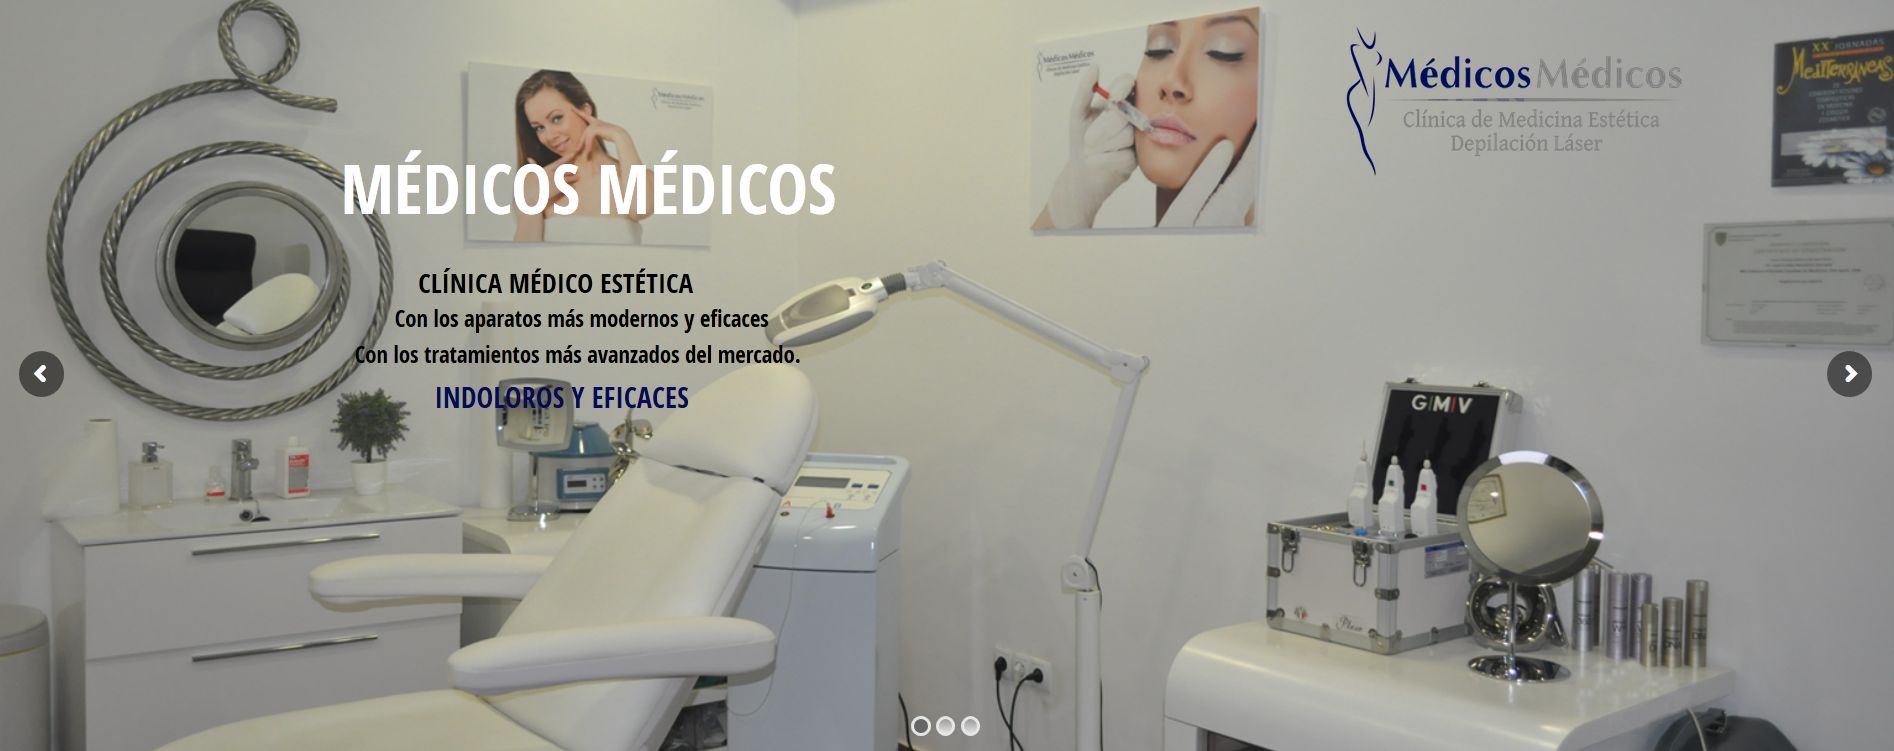 Clínica Medicina Estética y depilación láser Médicos Médicos Esplugues de Llobregat